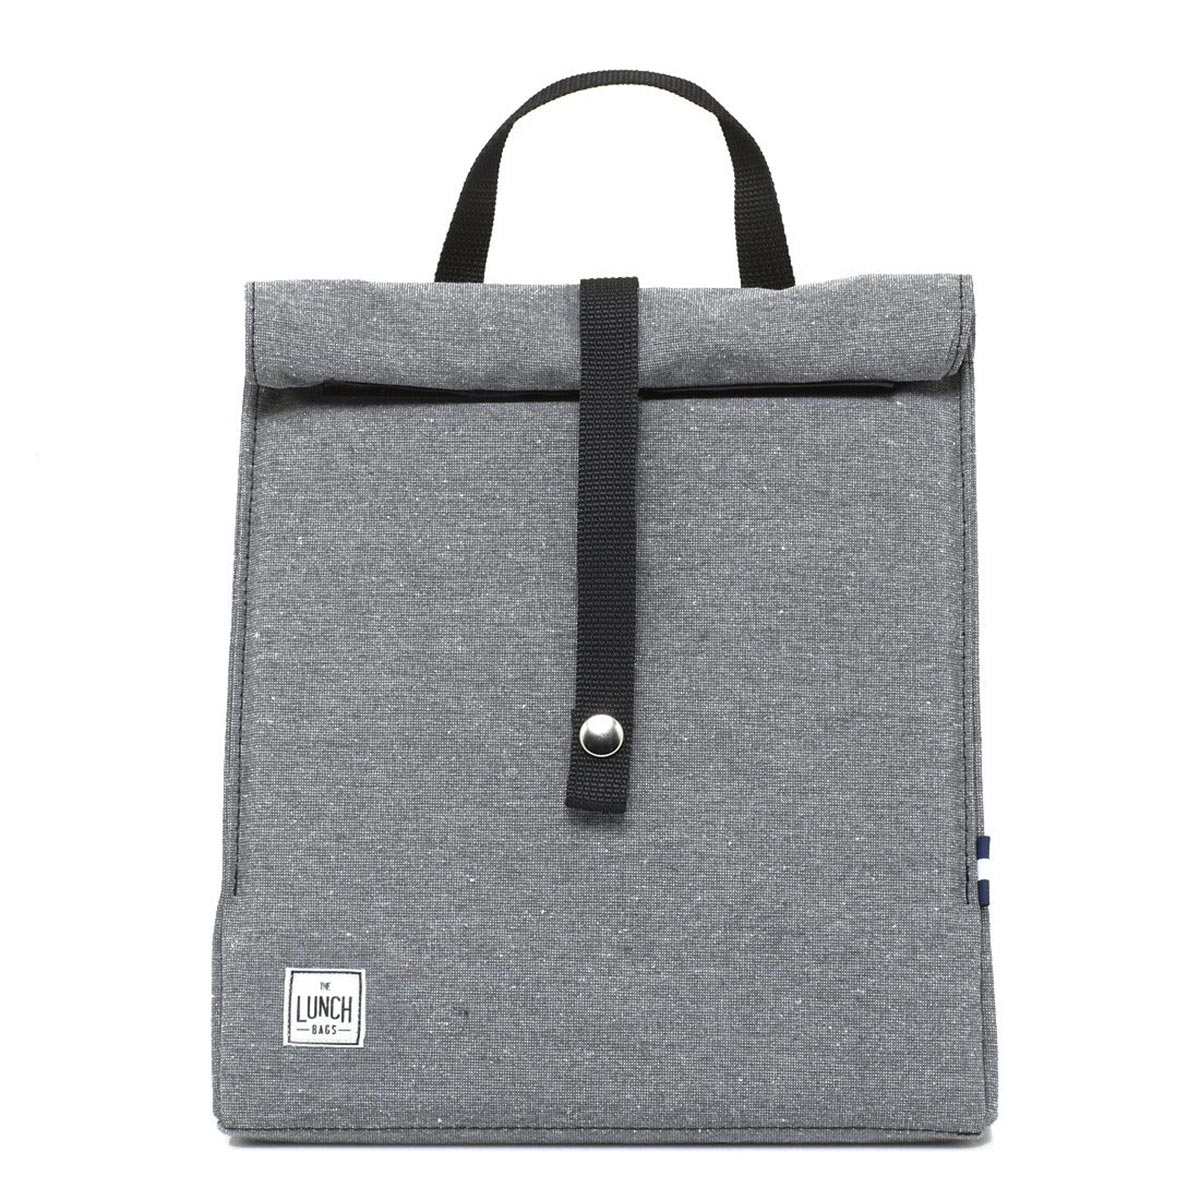 Ισοθερμική Τσάντα Φαγητού (8Lit) + Παγοκύστη The Lunch Bags Original Plus Stone Grey 212515